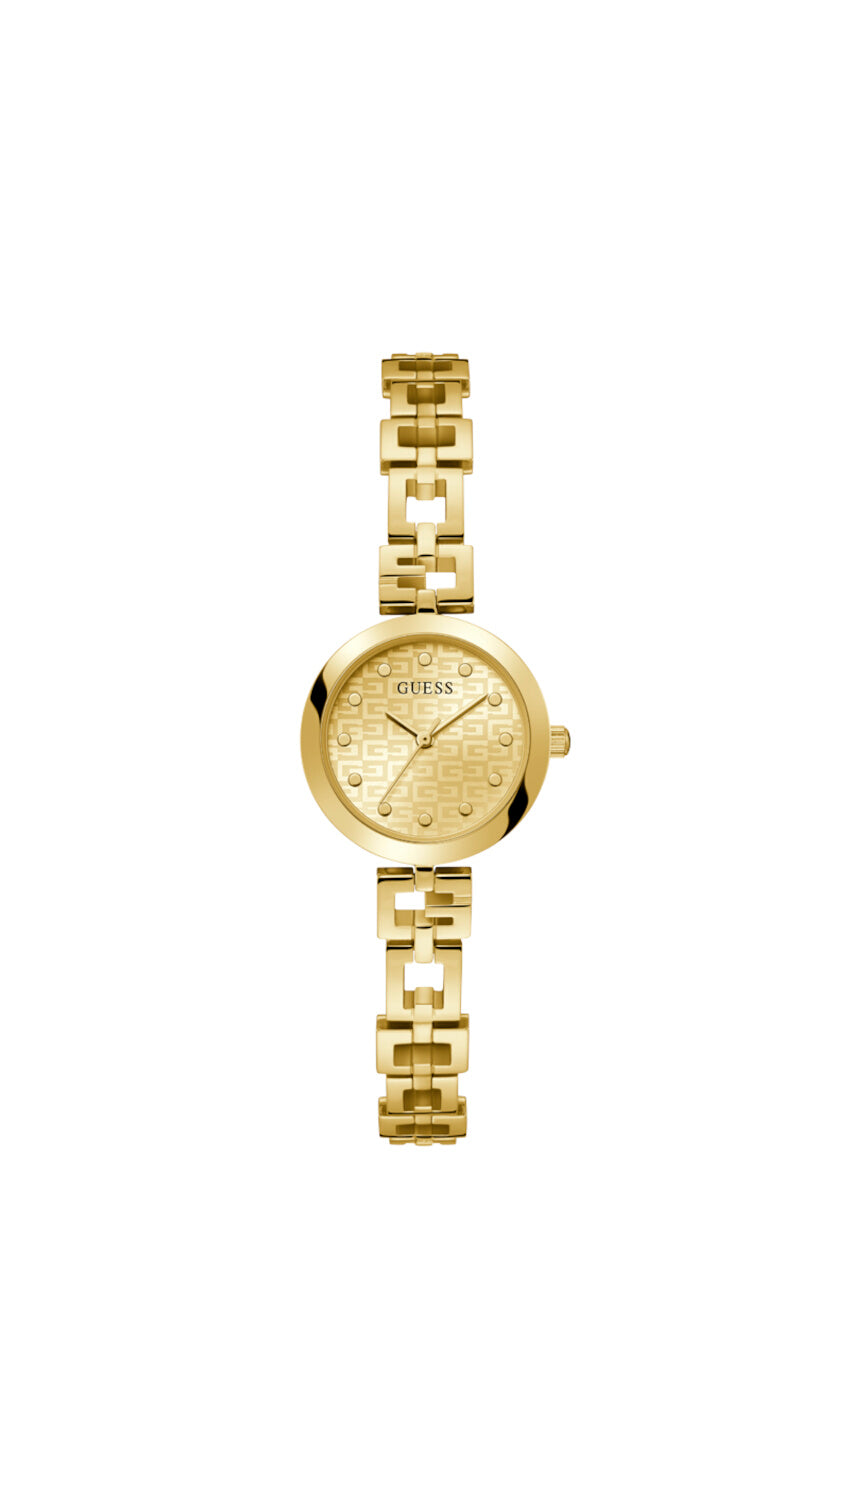 Reloj Guess de Mujer Lady G color oro